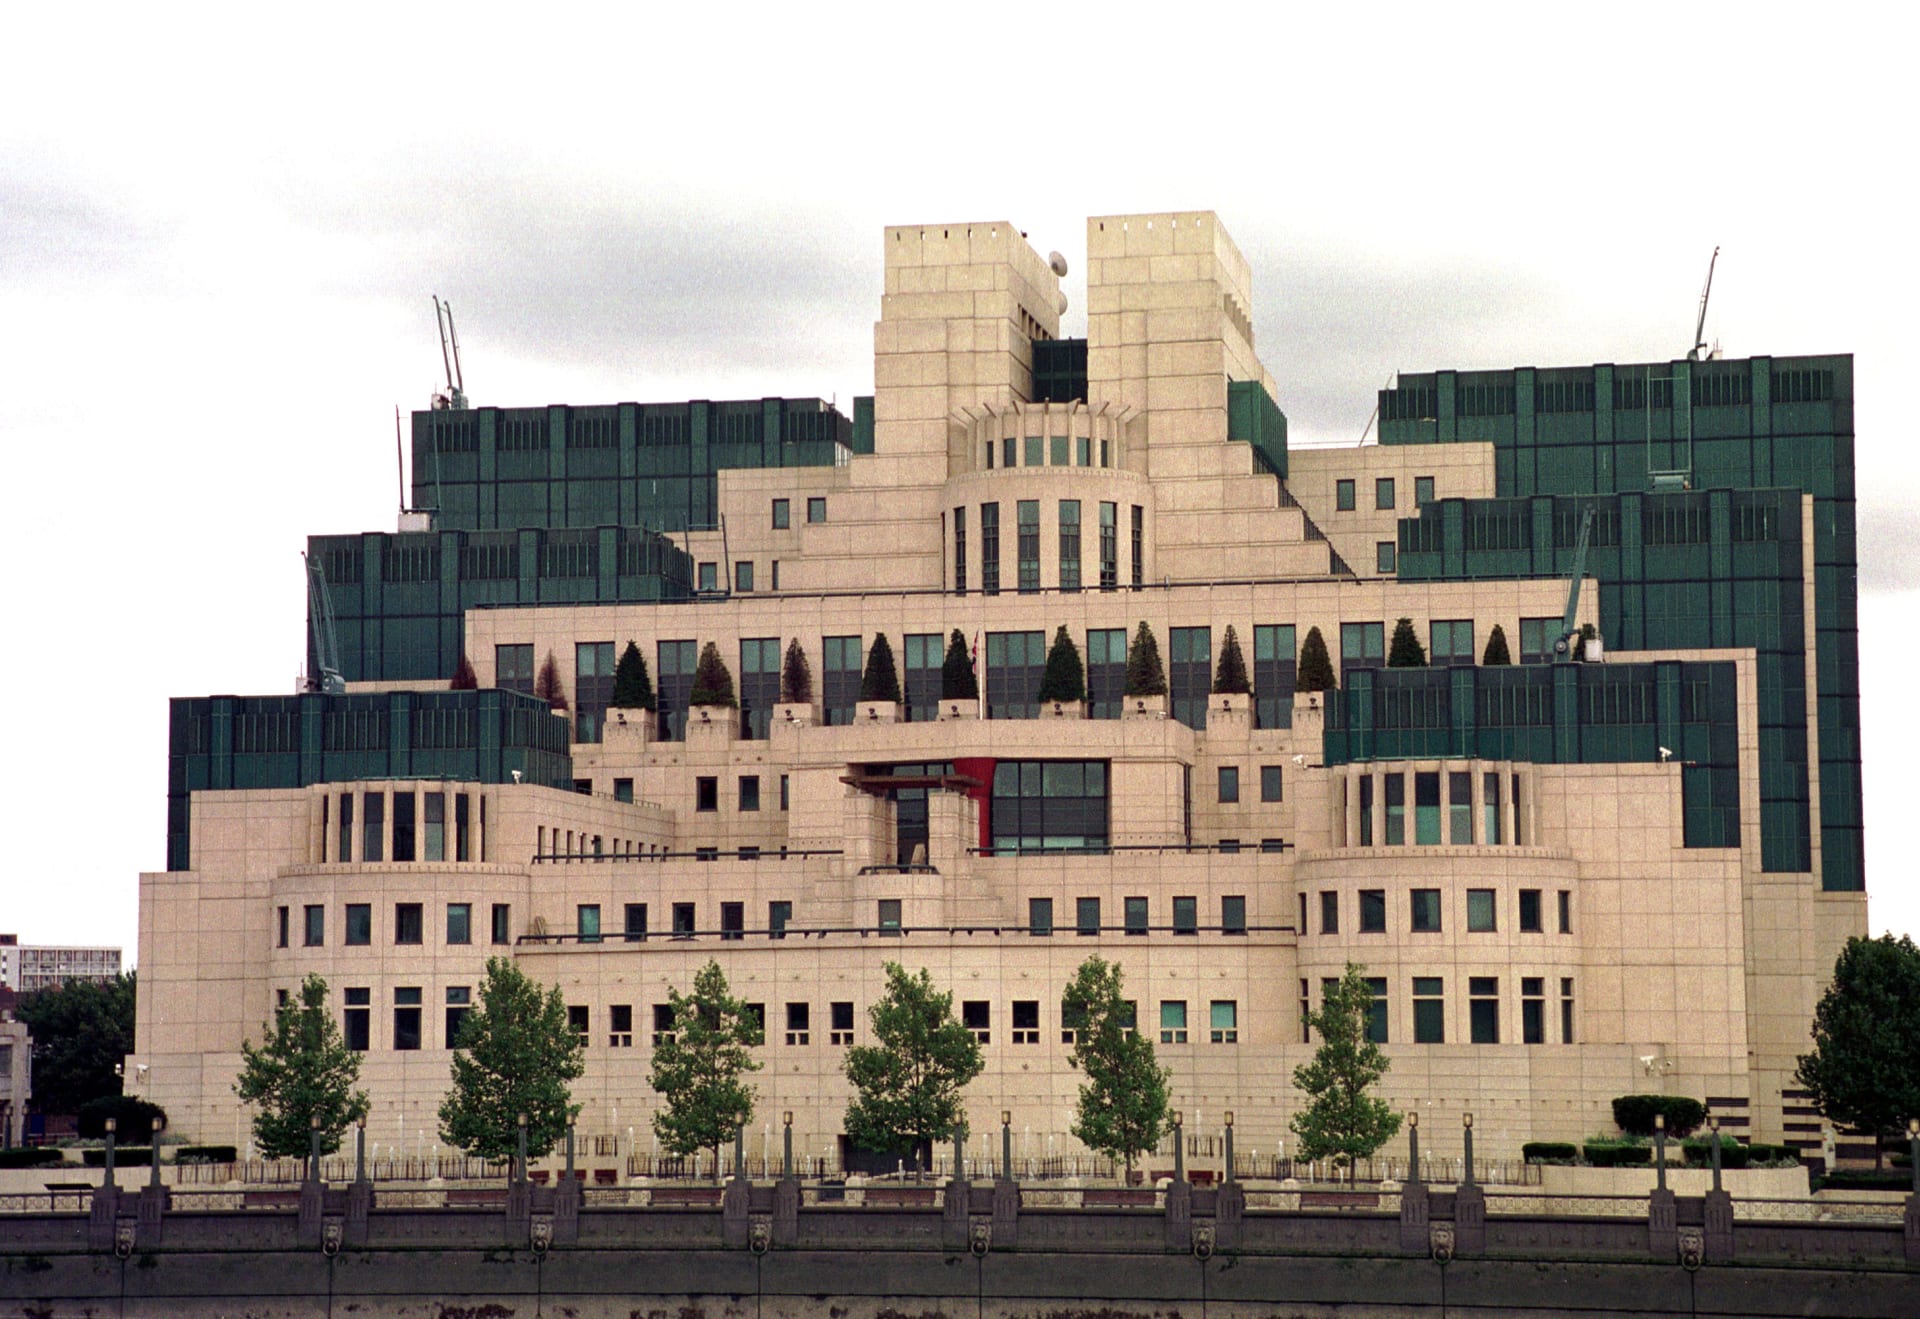 Budovu MI6 nejde přehlédnout